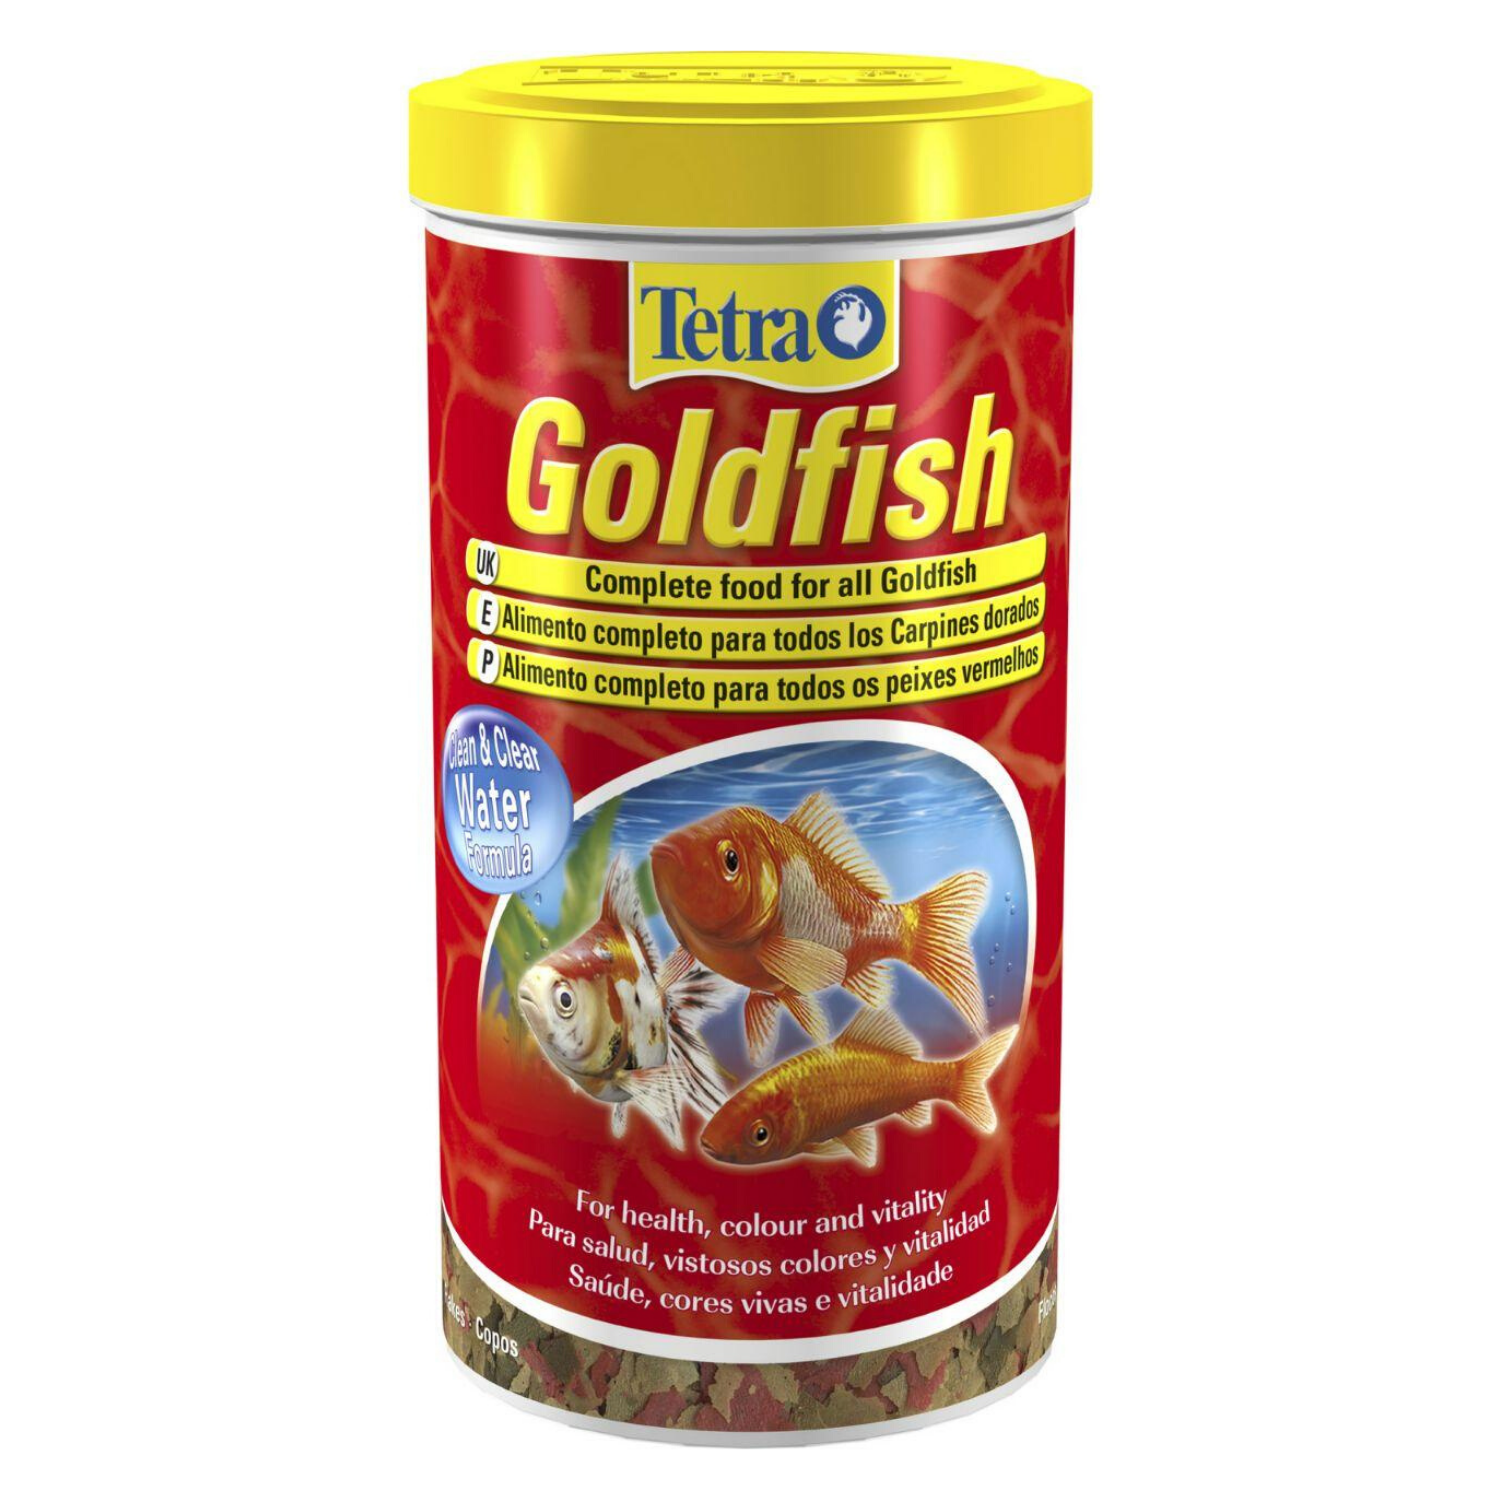 Tetra Goldfish - 52g / 200g